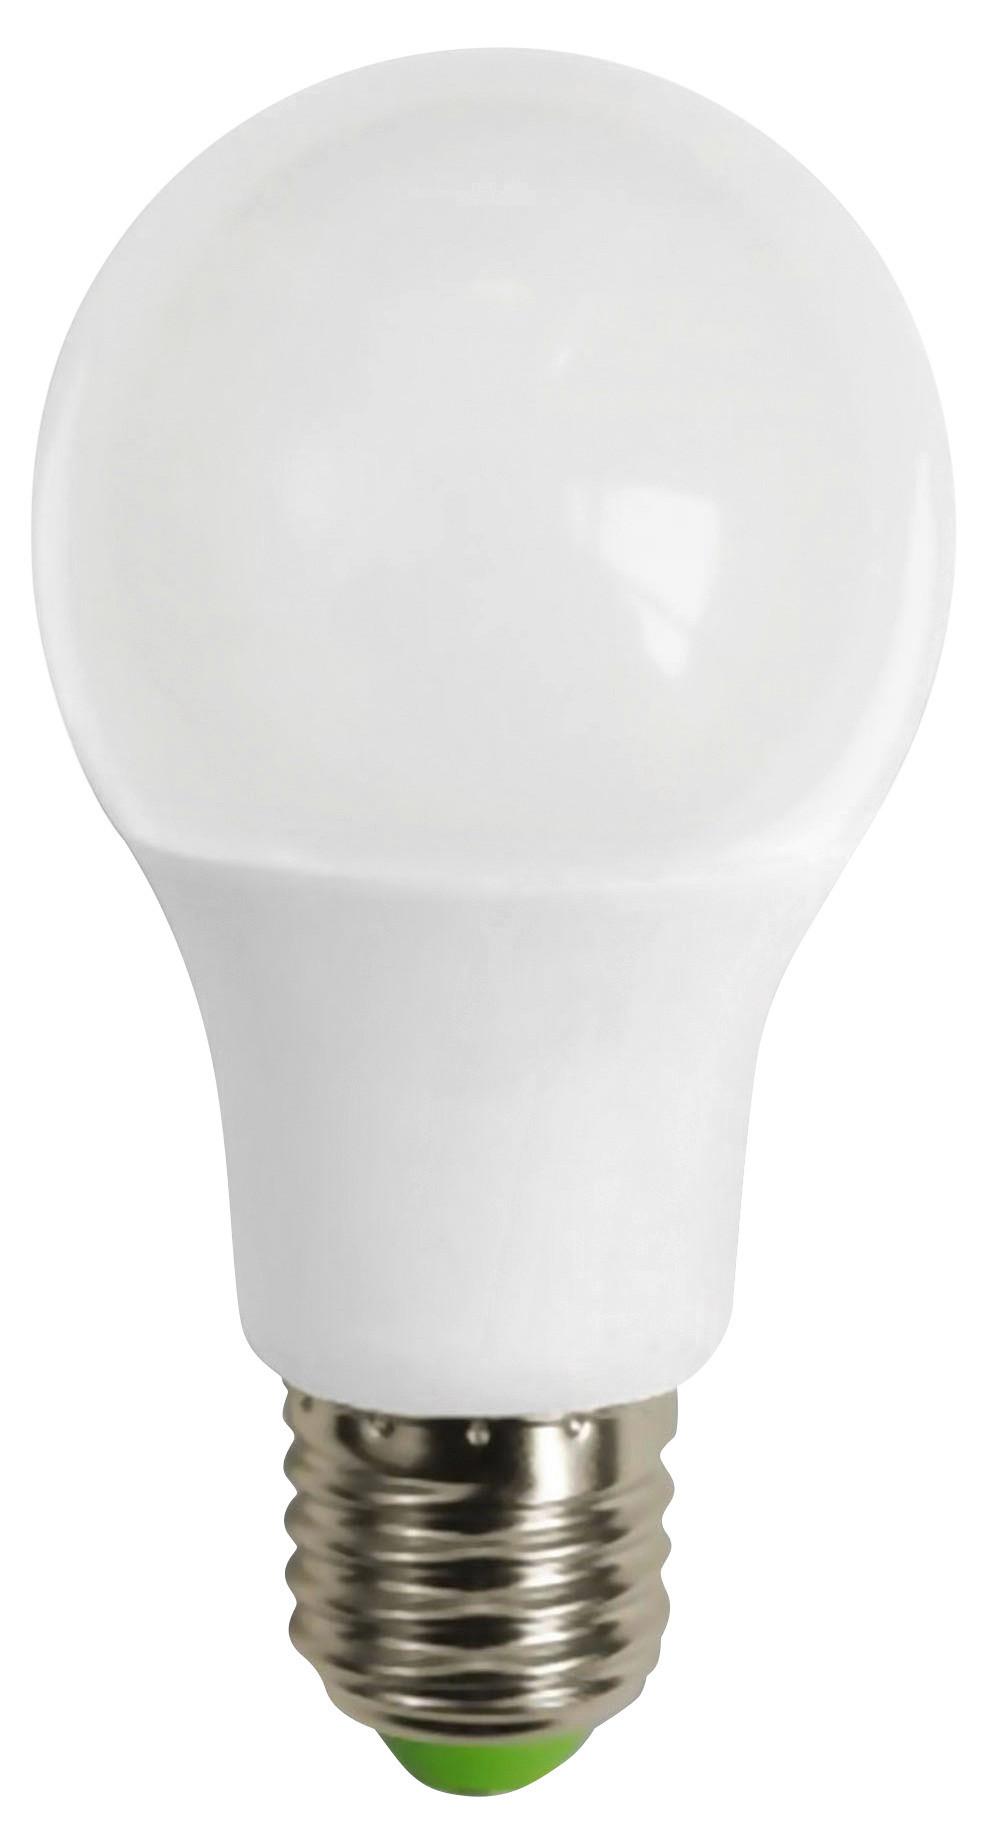 LED-Leuchtmittel C80196MM max. 7 Watt - Weiß, Keramik/Kunststoff (6/10,8cm) - Based